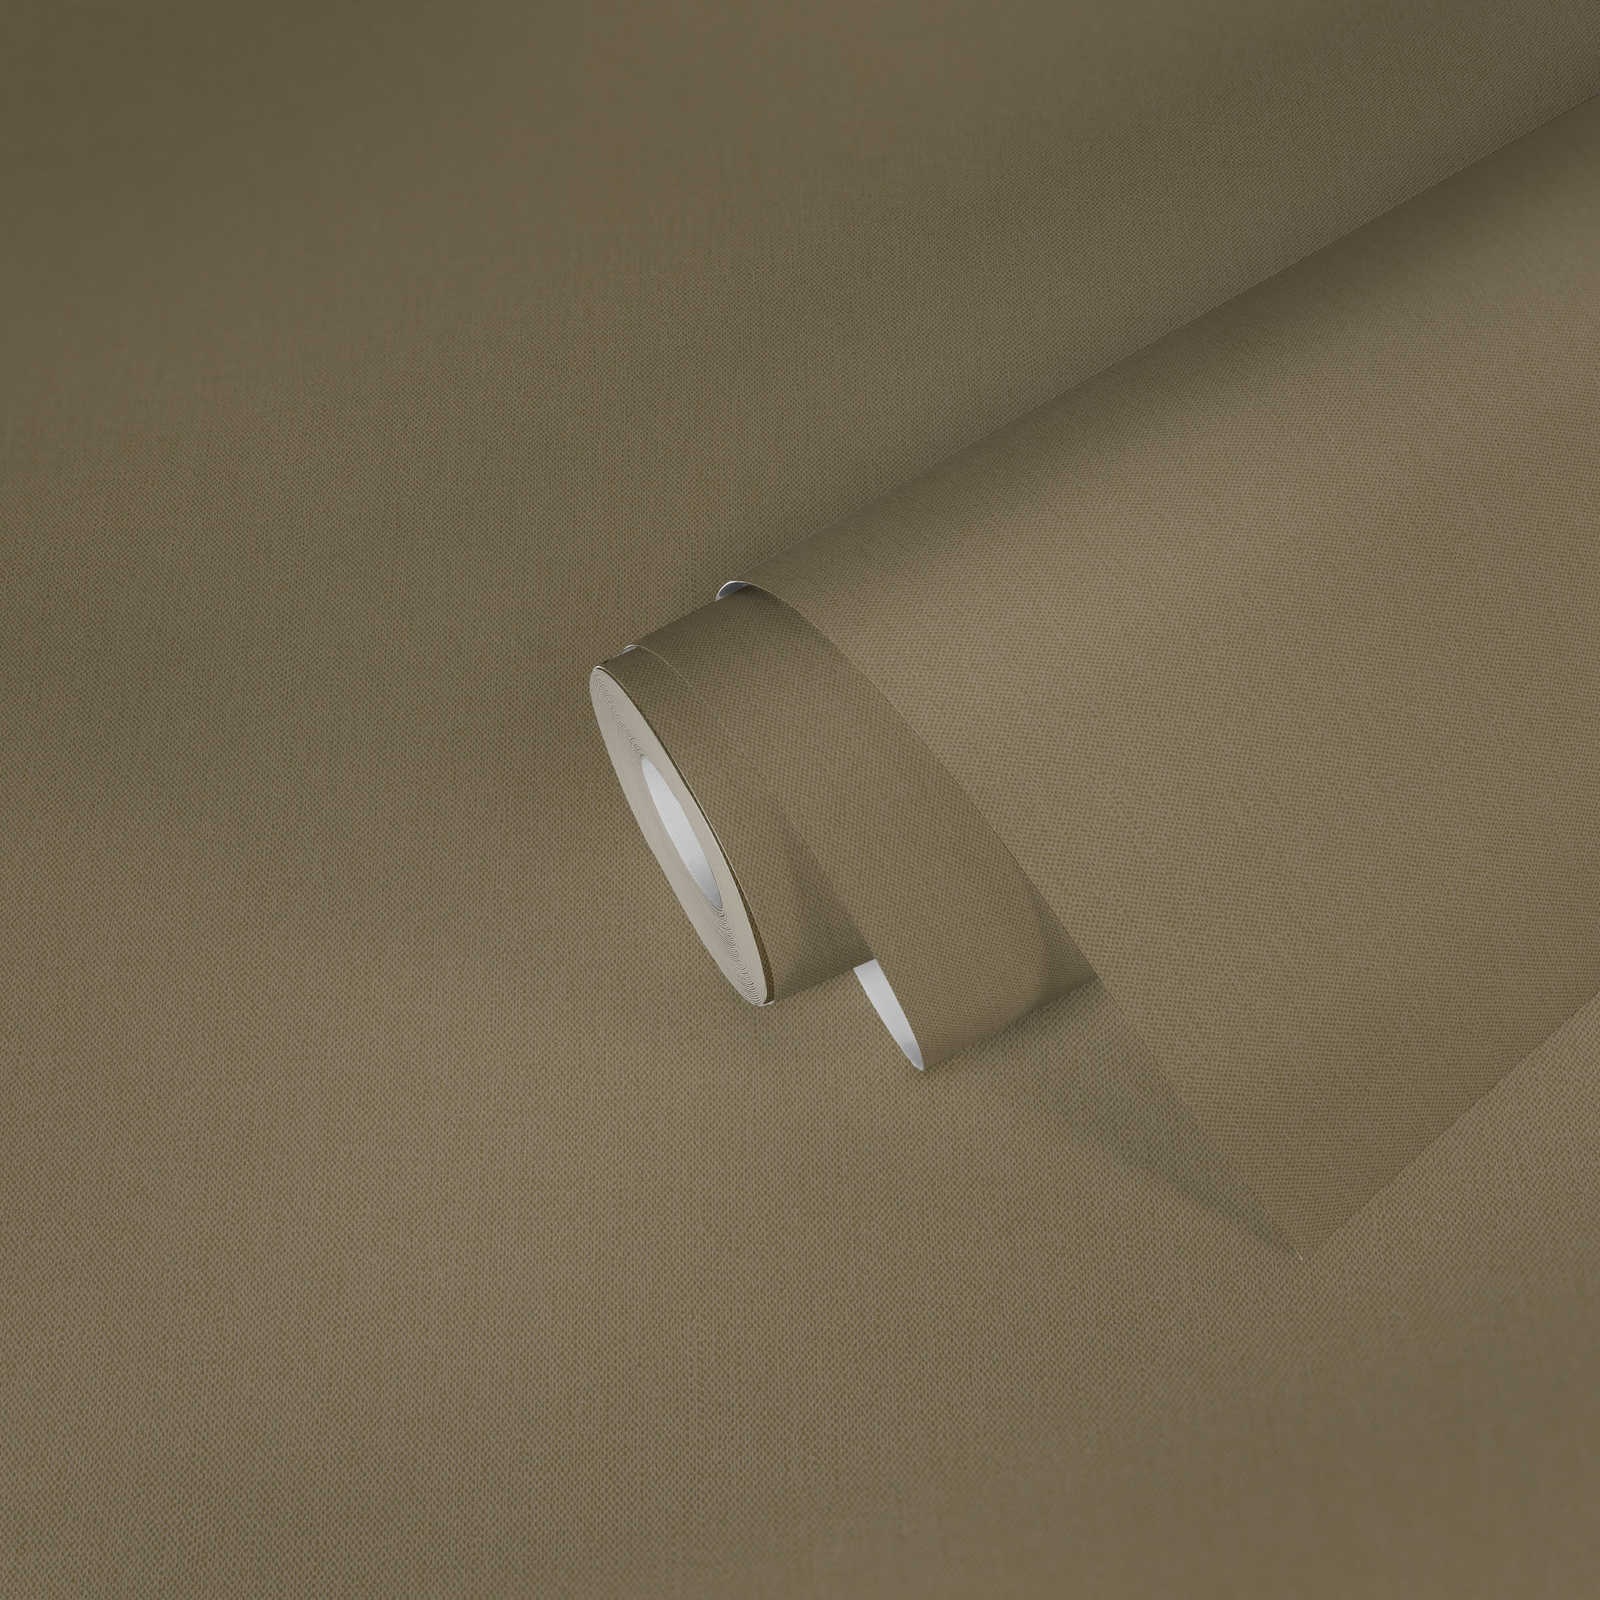             Papier peint intissé uni marron mat kaki avec structure textile
        